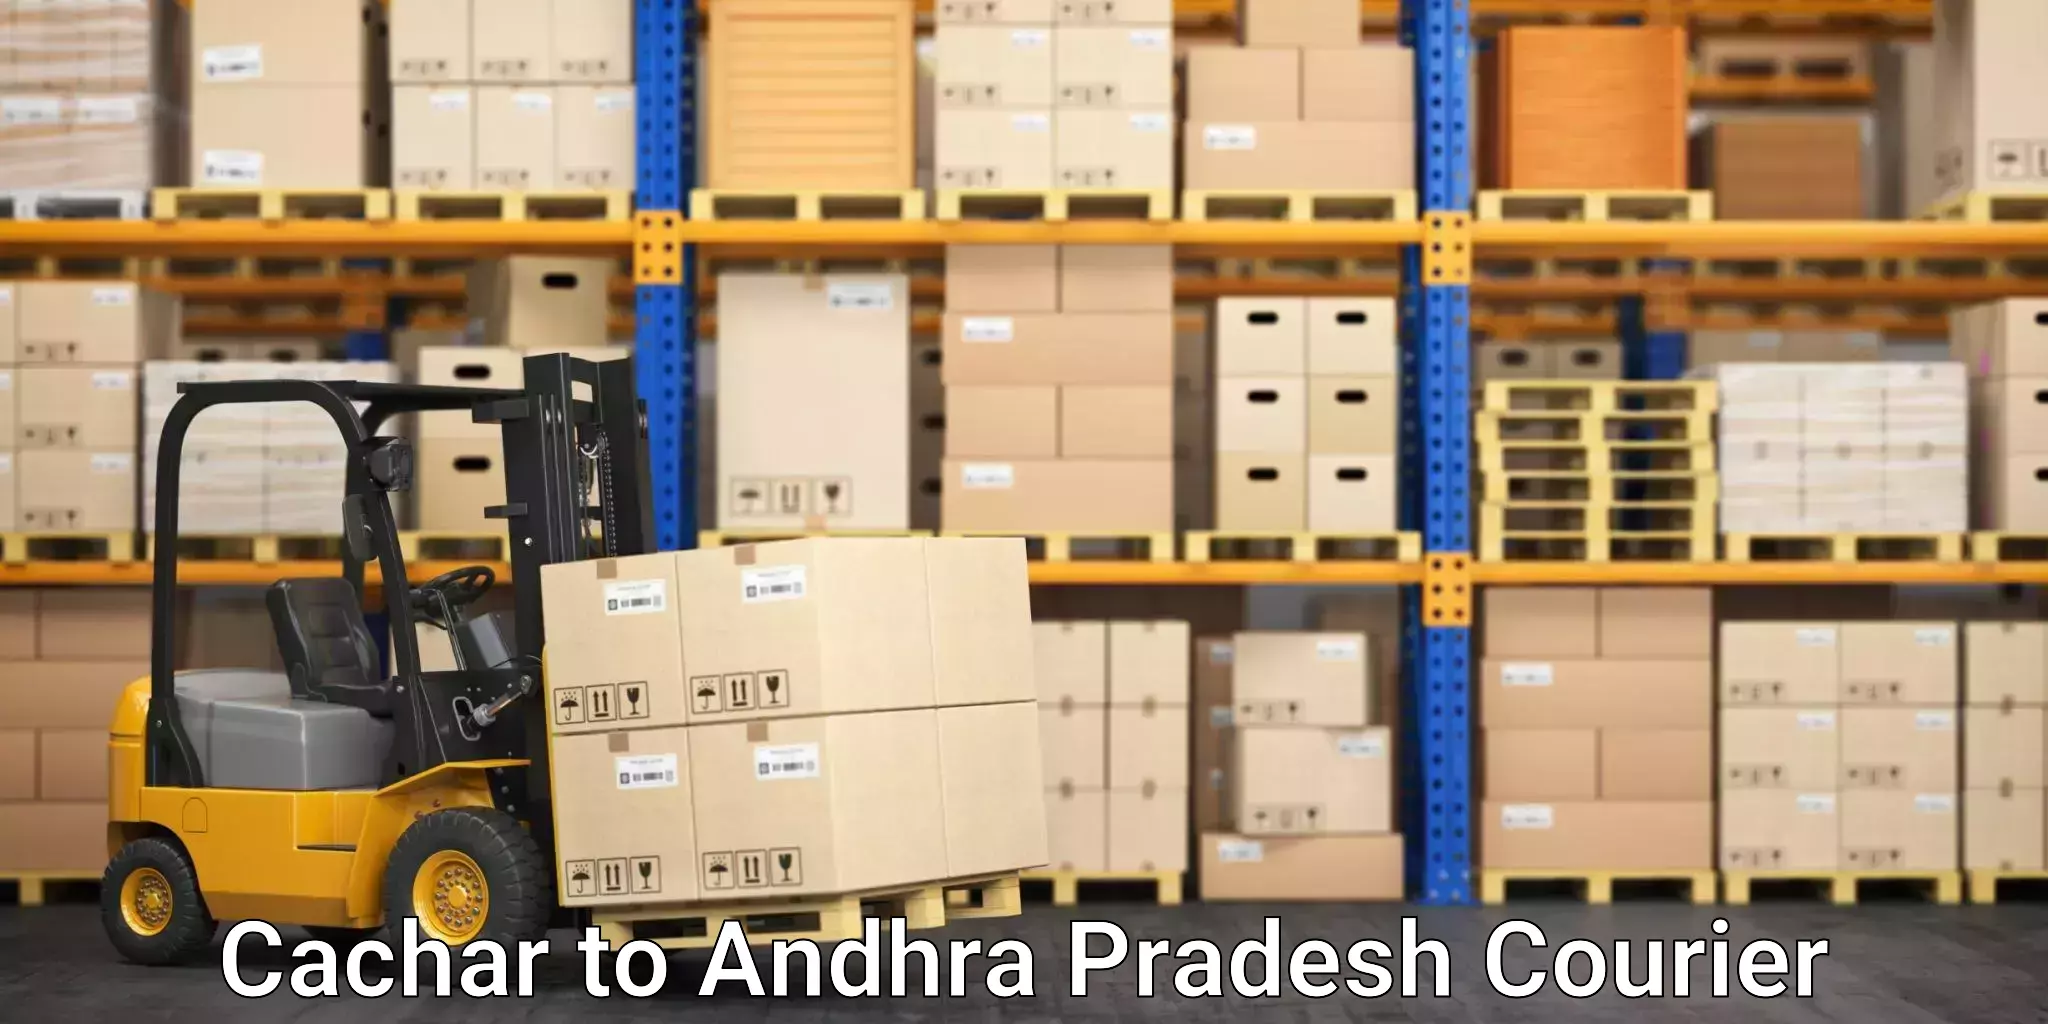 E-commerce shipping partnerships Cachar to Kathipudi